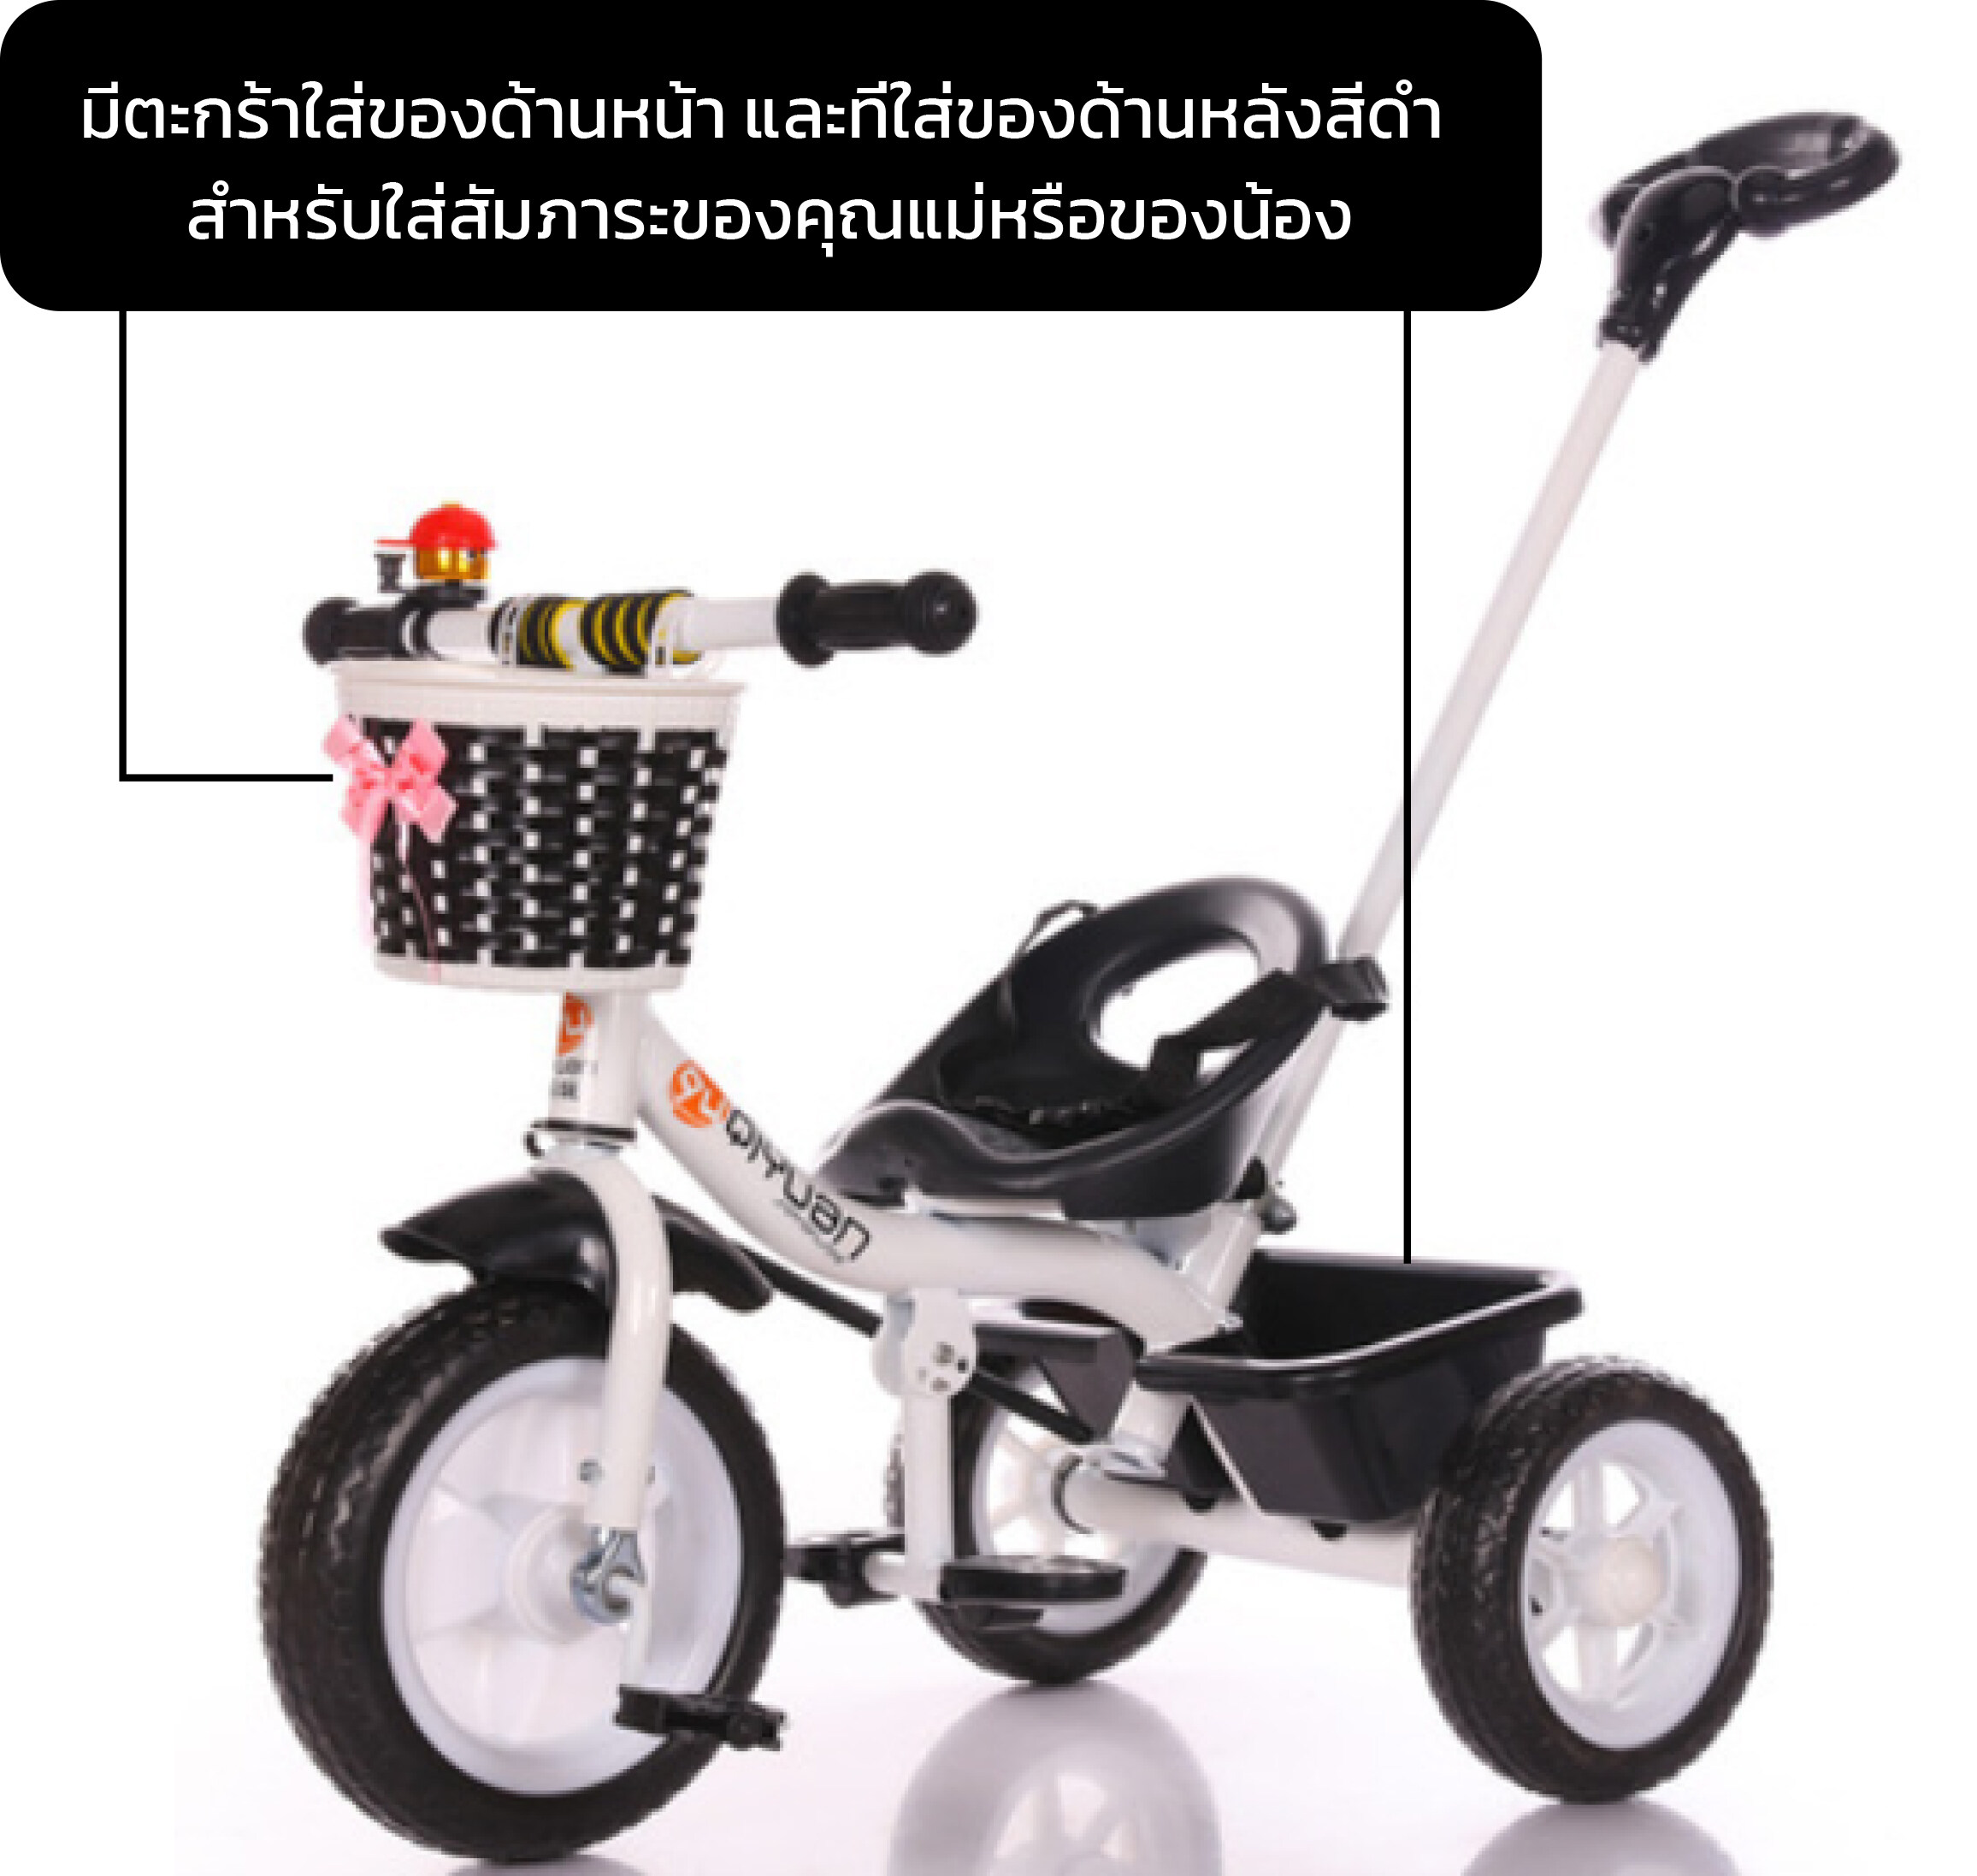 [สีดำ] - รถจักรยานเด็ก รถจักรยานเด็ก 3 ล้อ จักรยานเด็ก มีตระกร้าด้านหลัง สำหรับเด็ก 2 ขวบขึ้นไป. 